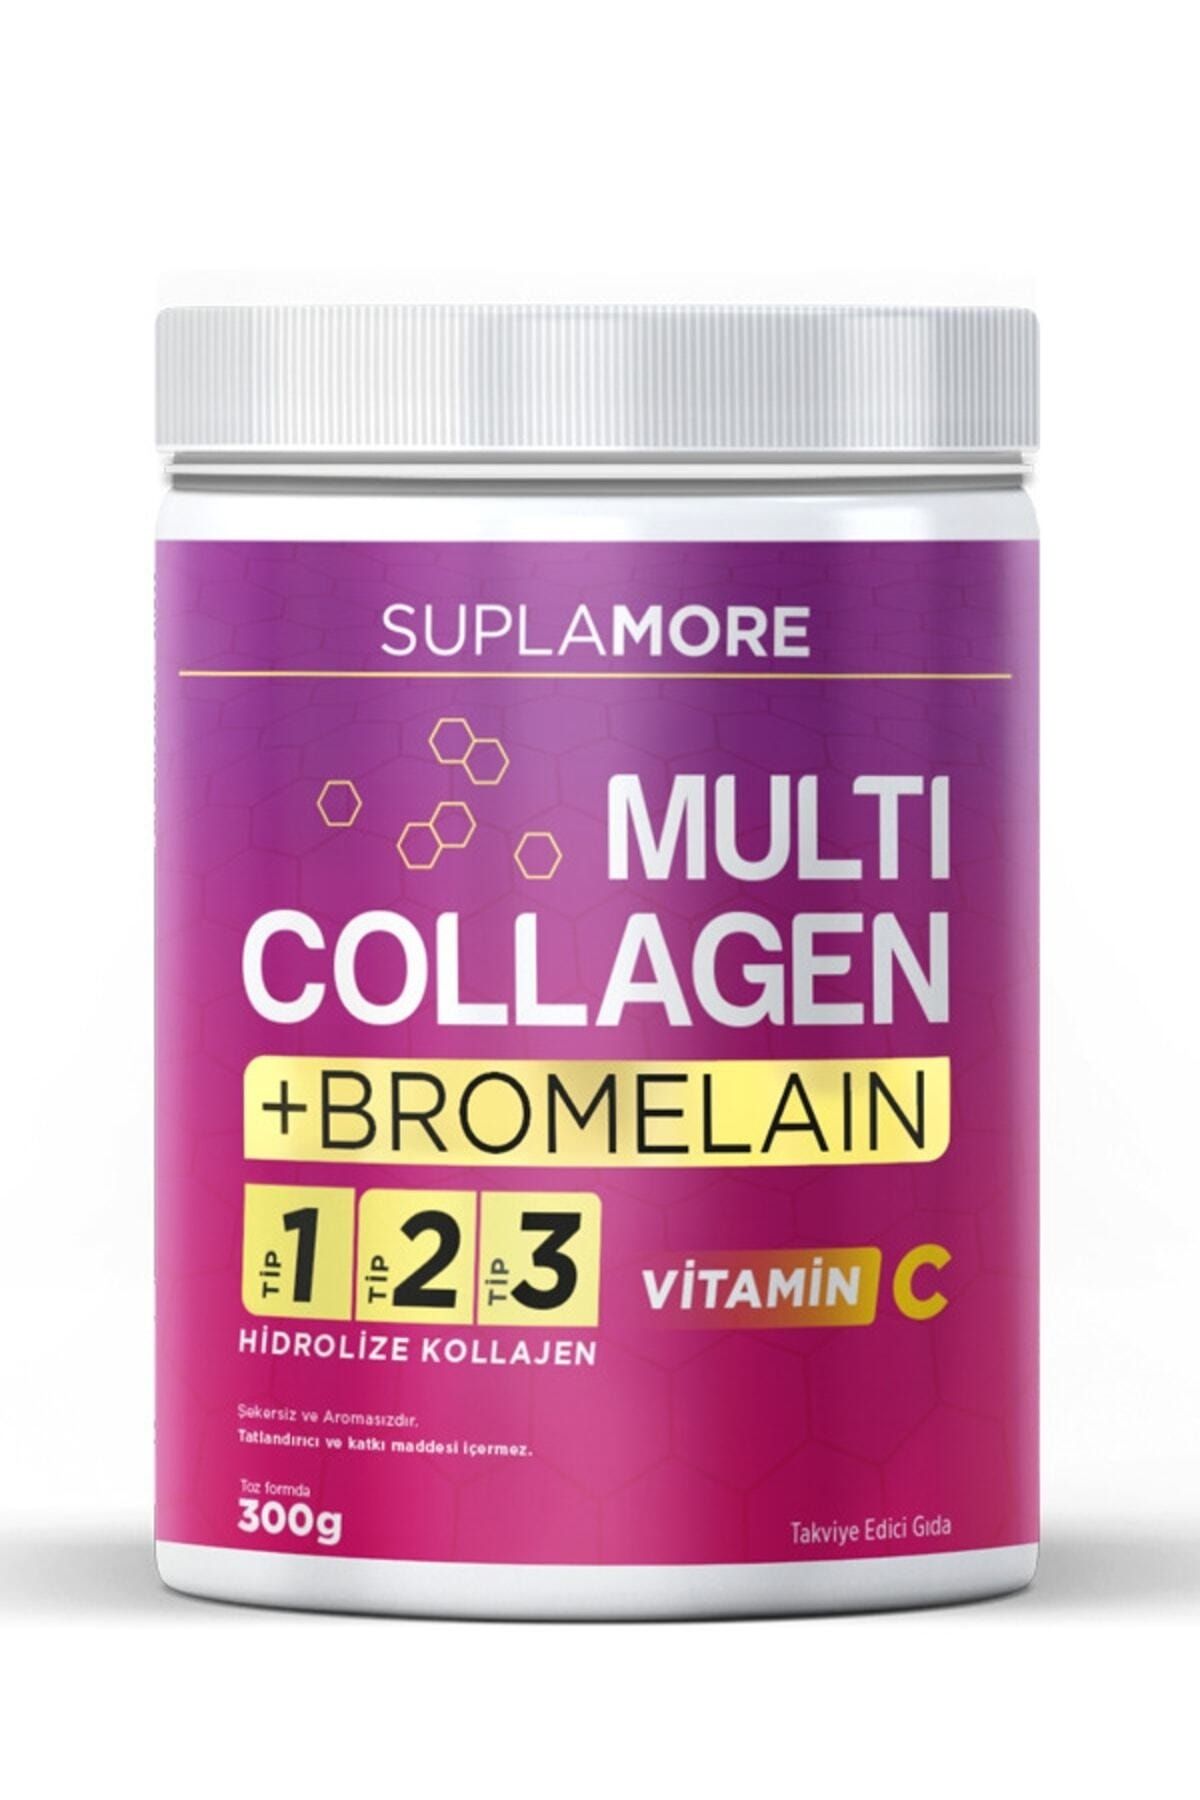 Suplamore Kolajen Multi Collagen & Bromelain Tip1 Tip2 Tip3 Hidrolize Kolajen Powder 300gr.